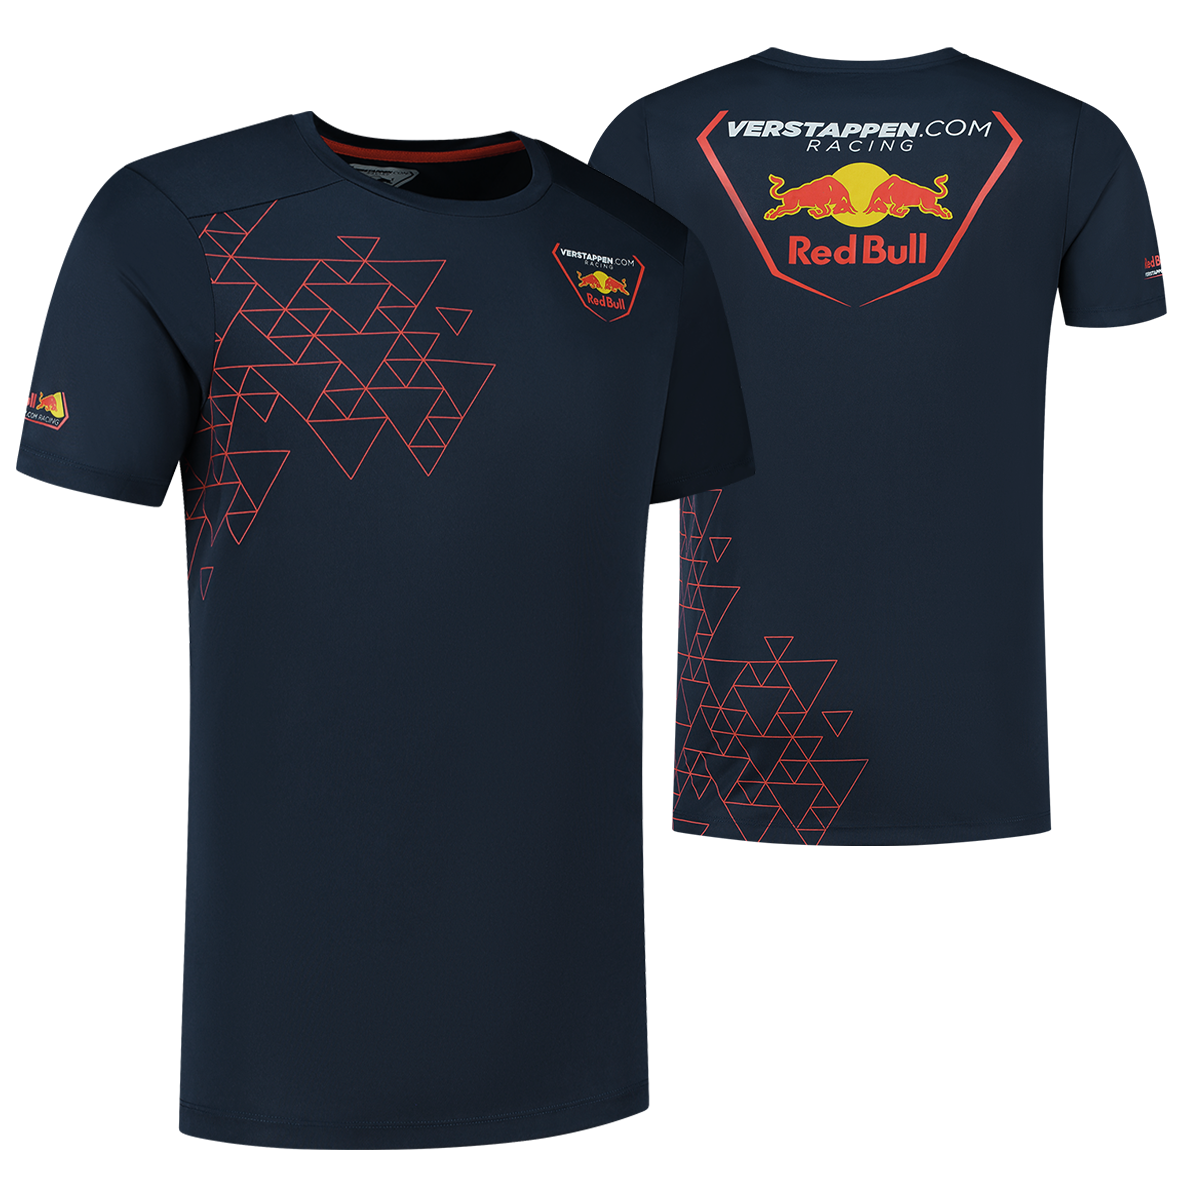 Verstappen.com Racing T-shirt - XXL - Max Verstappen